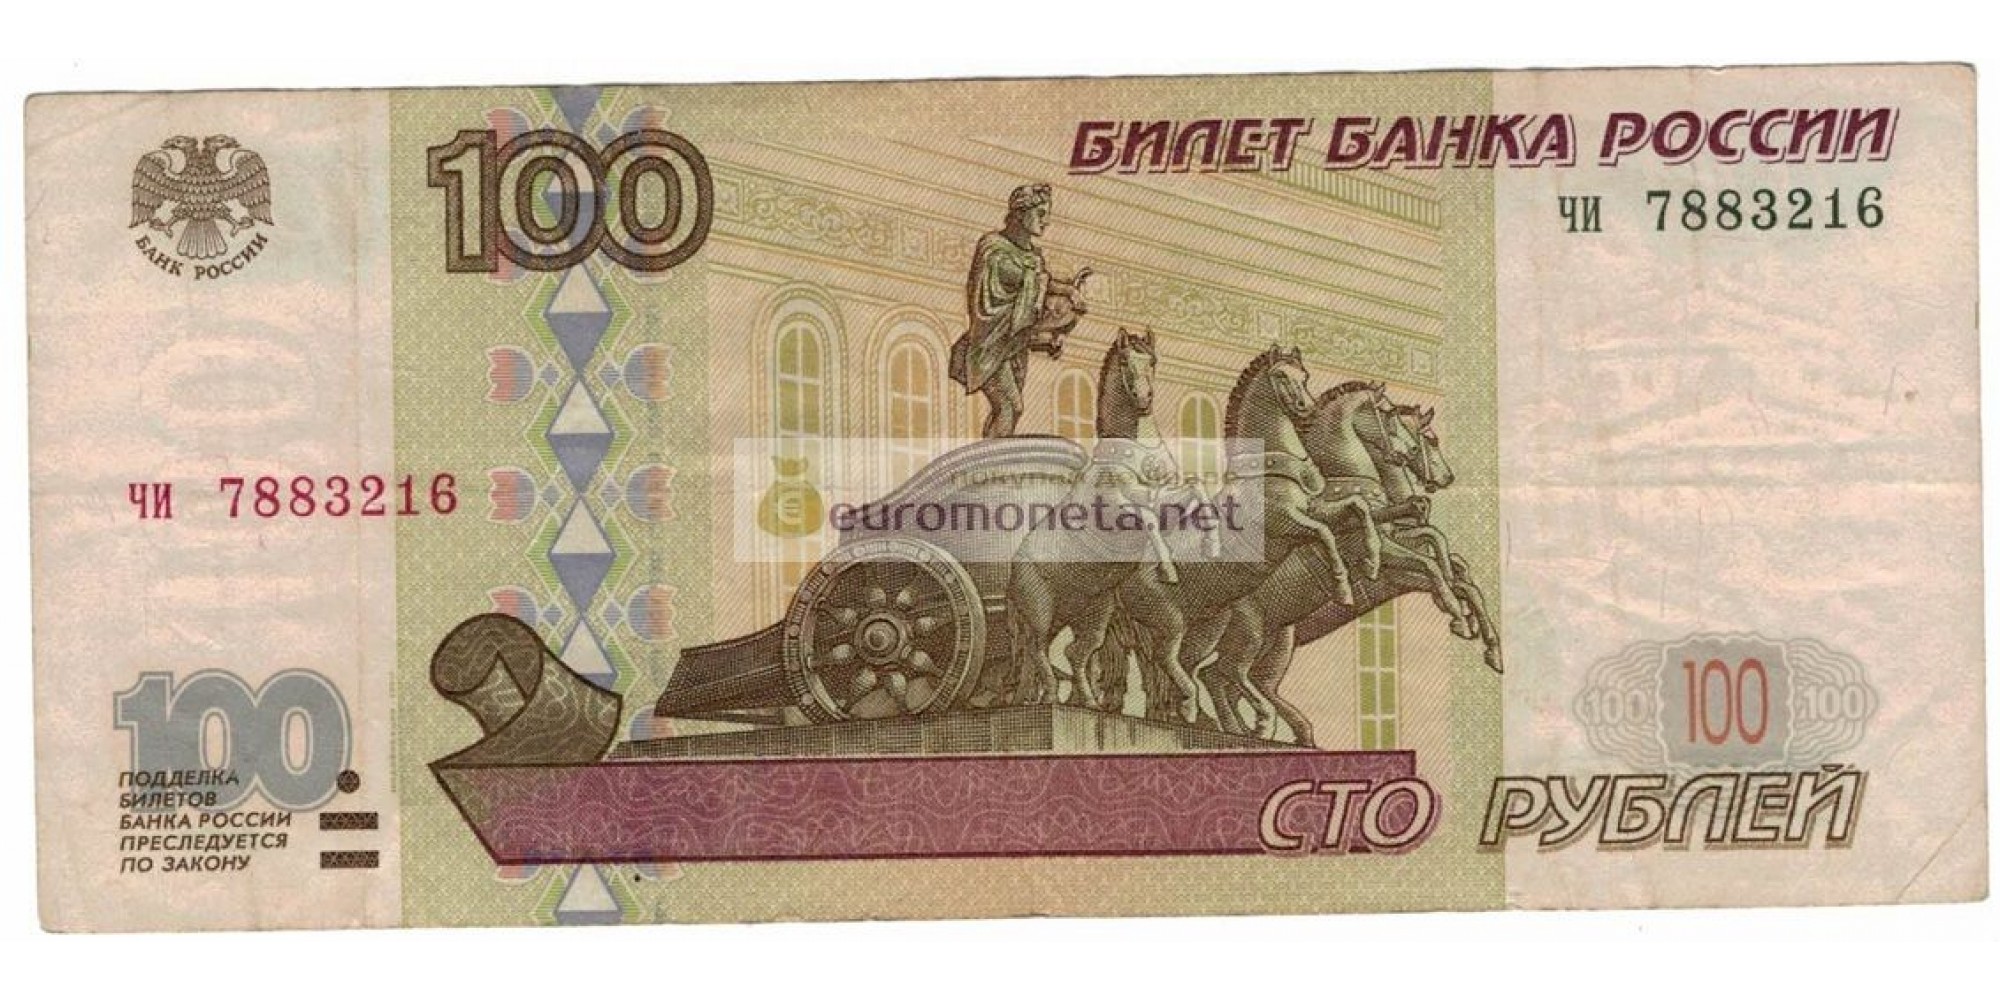 Россия 100 рублей 1997 год модификация 2001 год серия чи 7883216